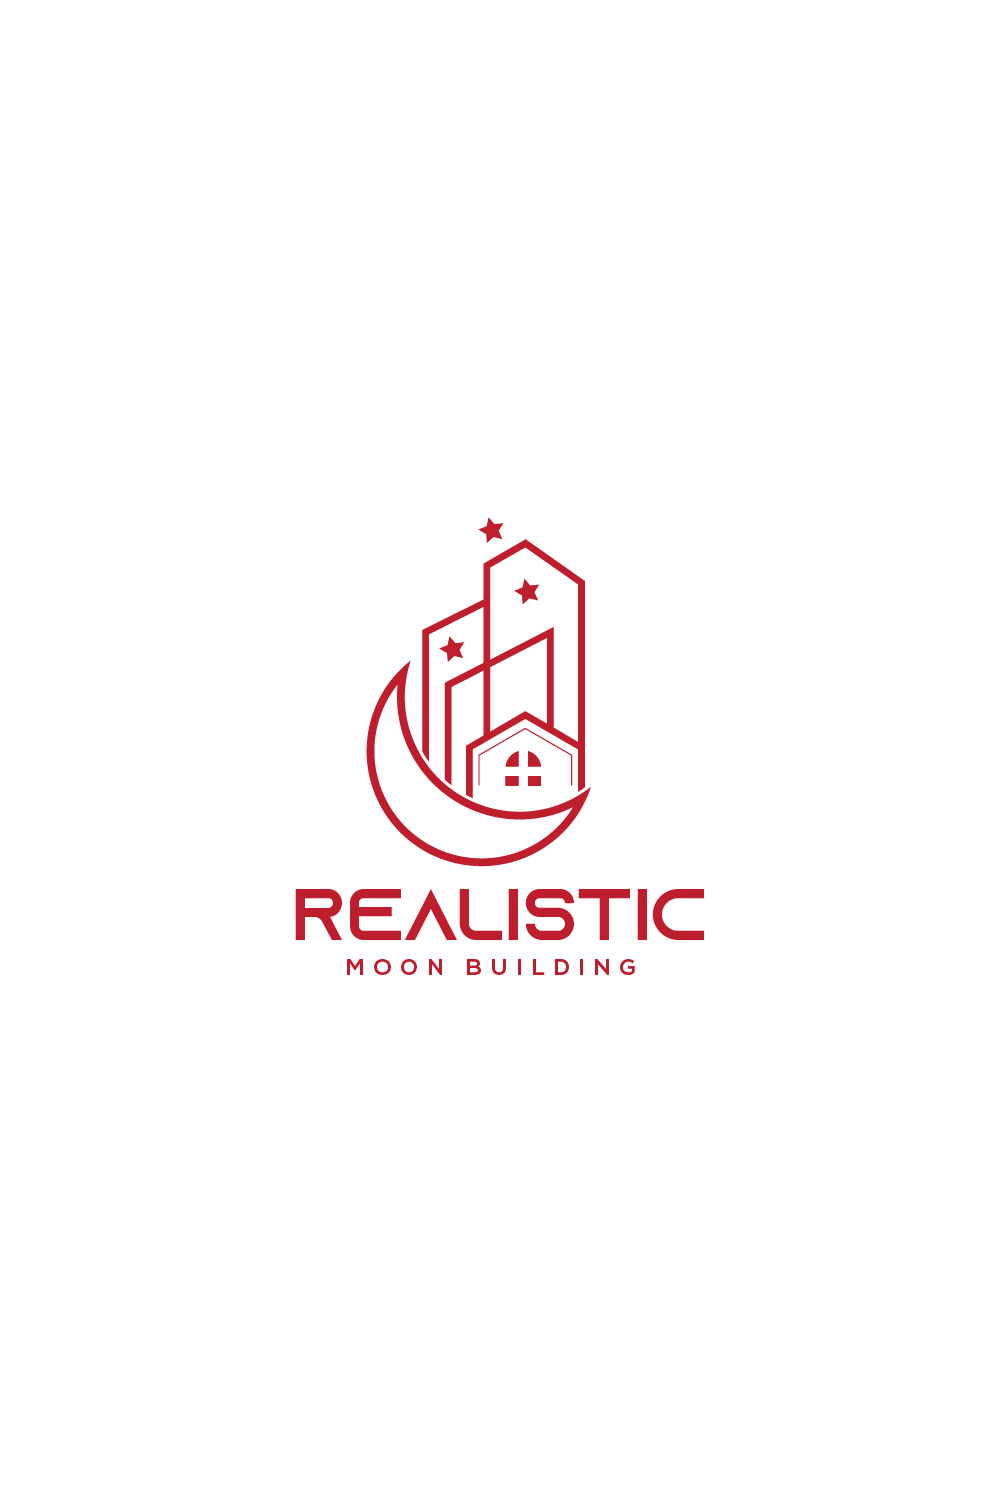 Professional Real Estate Logo Design pinterest image.